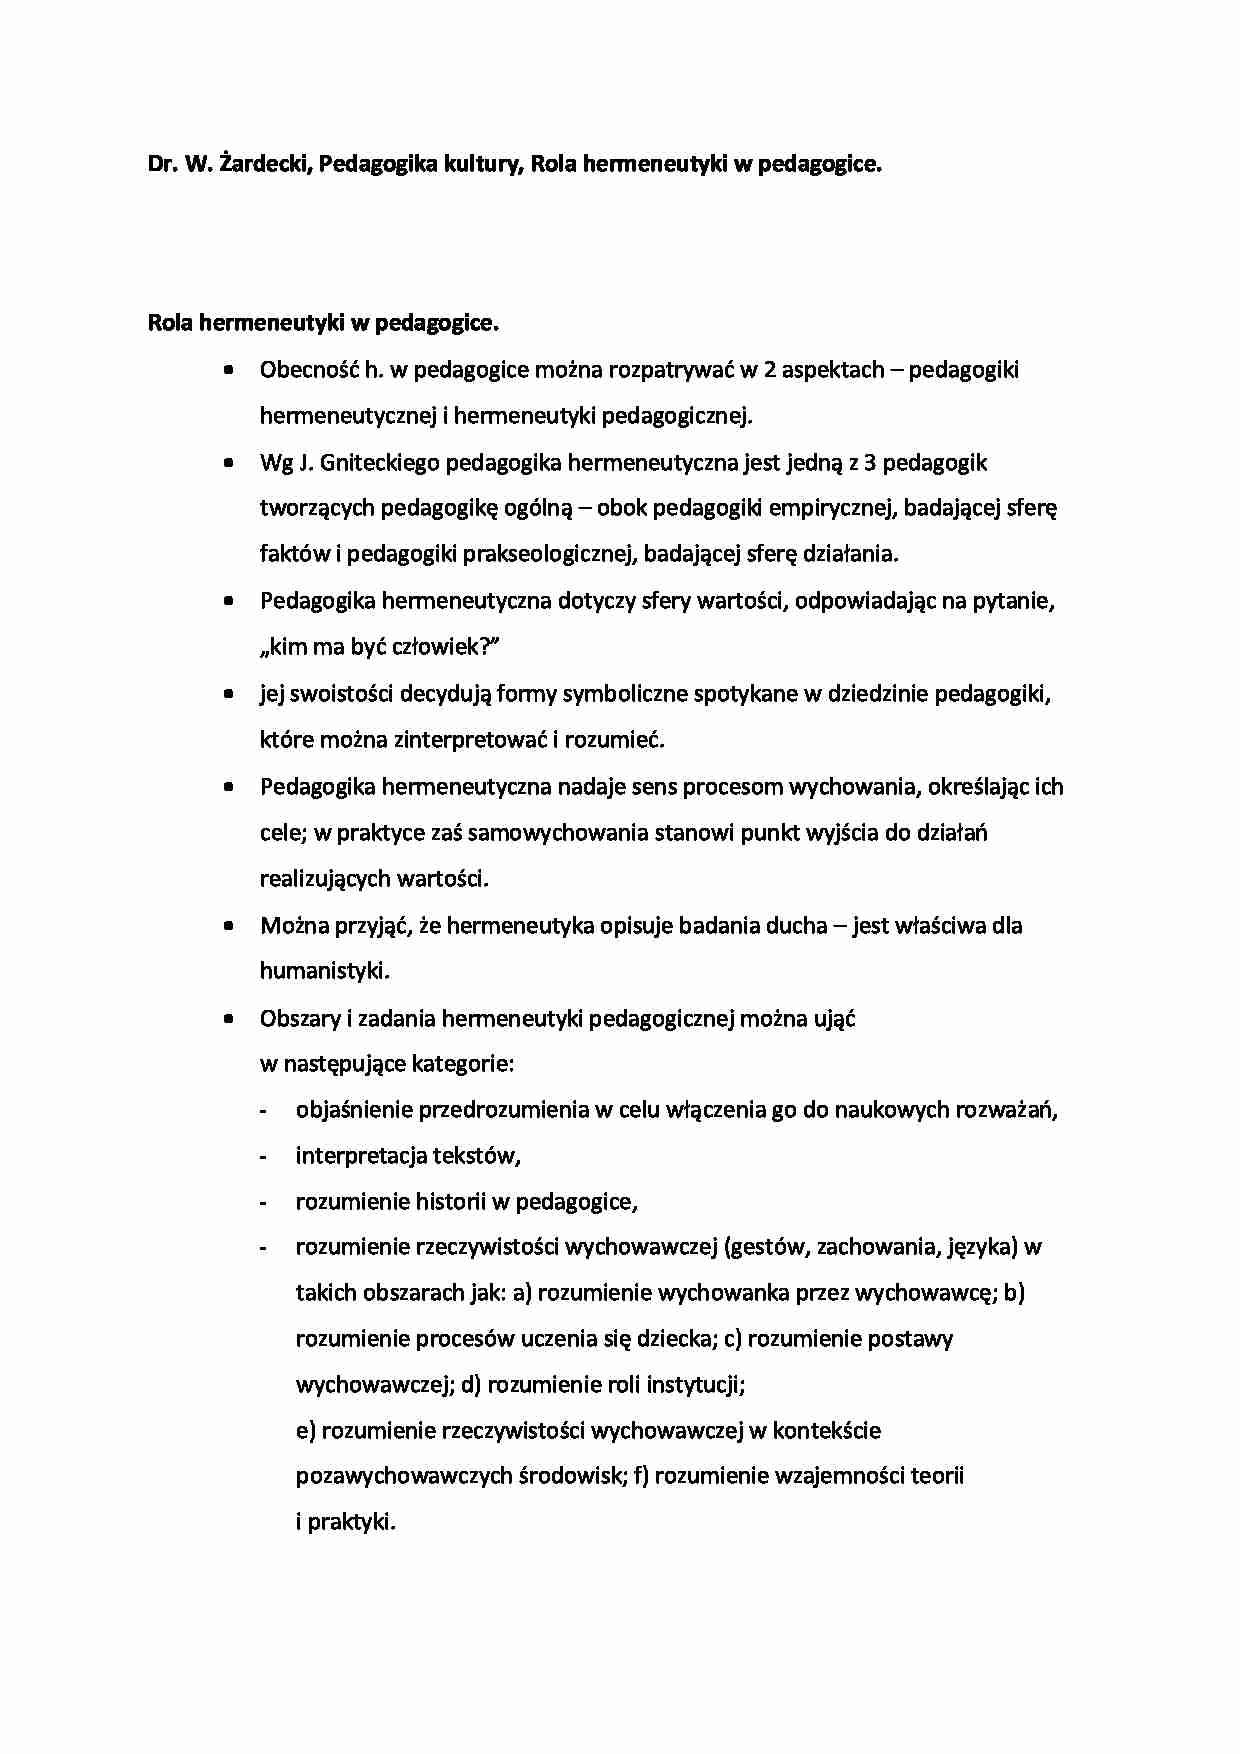 Rola hermeneutyki w pedagogice  - omówienie (sem. IV) - strona 1